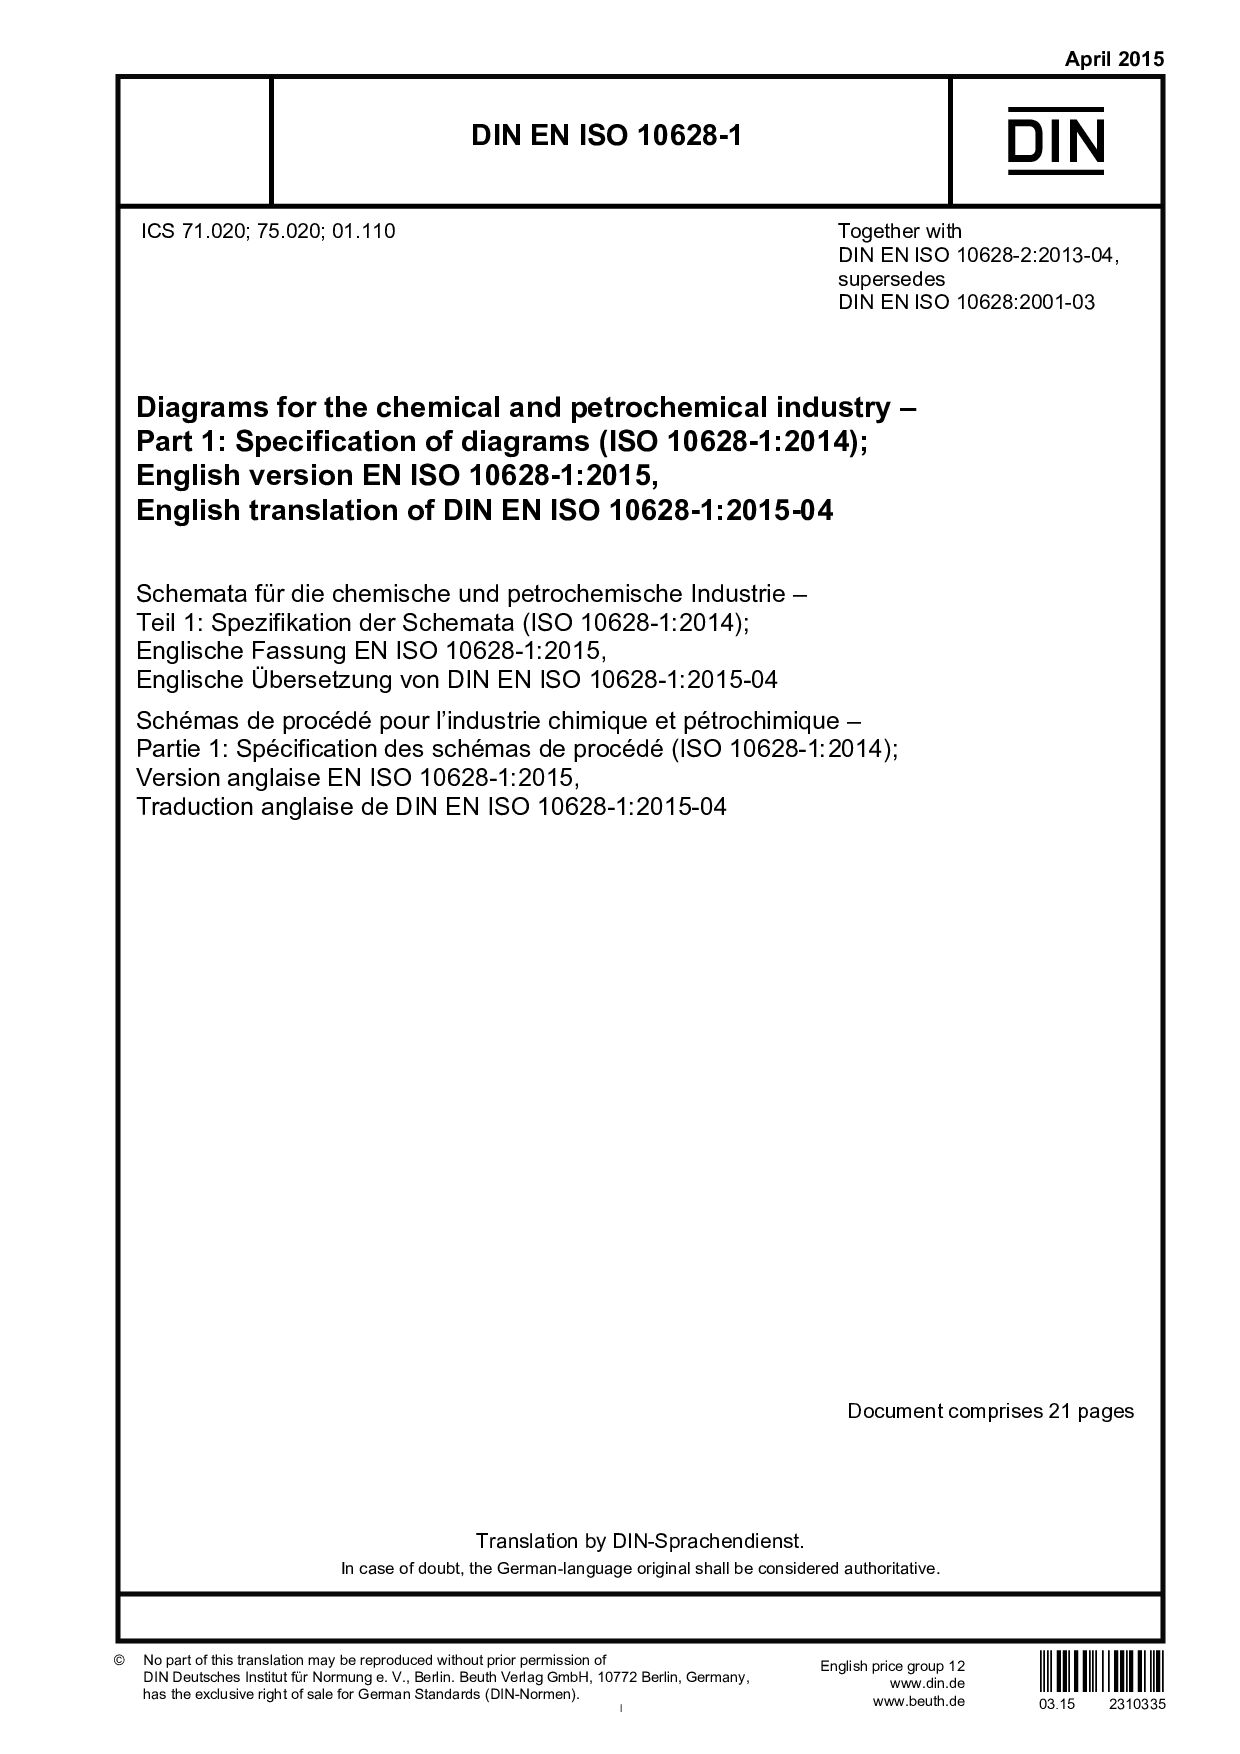 DIN EN ISO 10628-1:2015